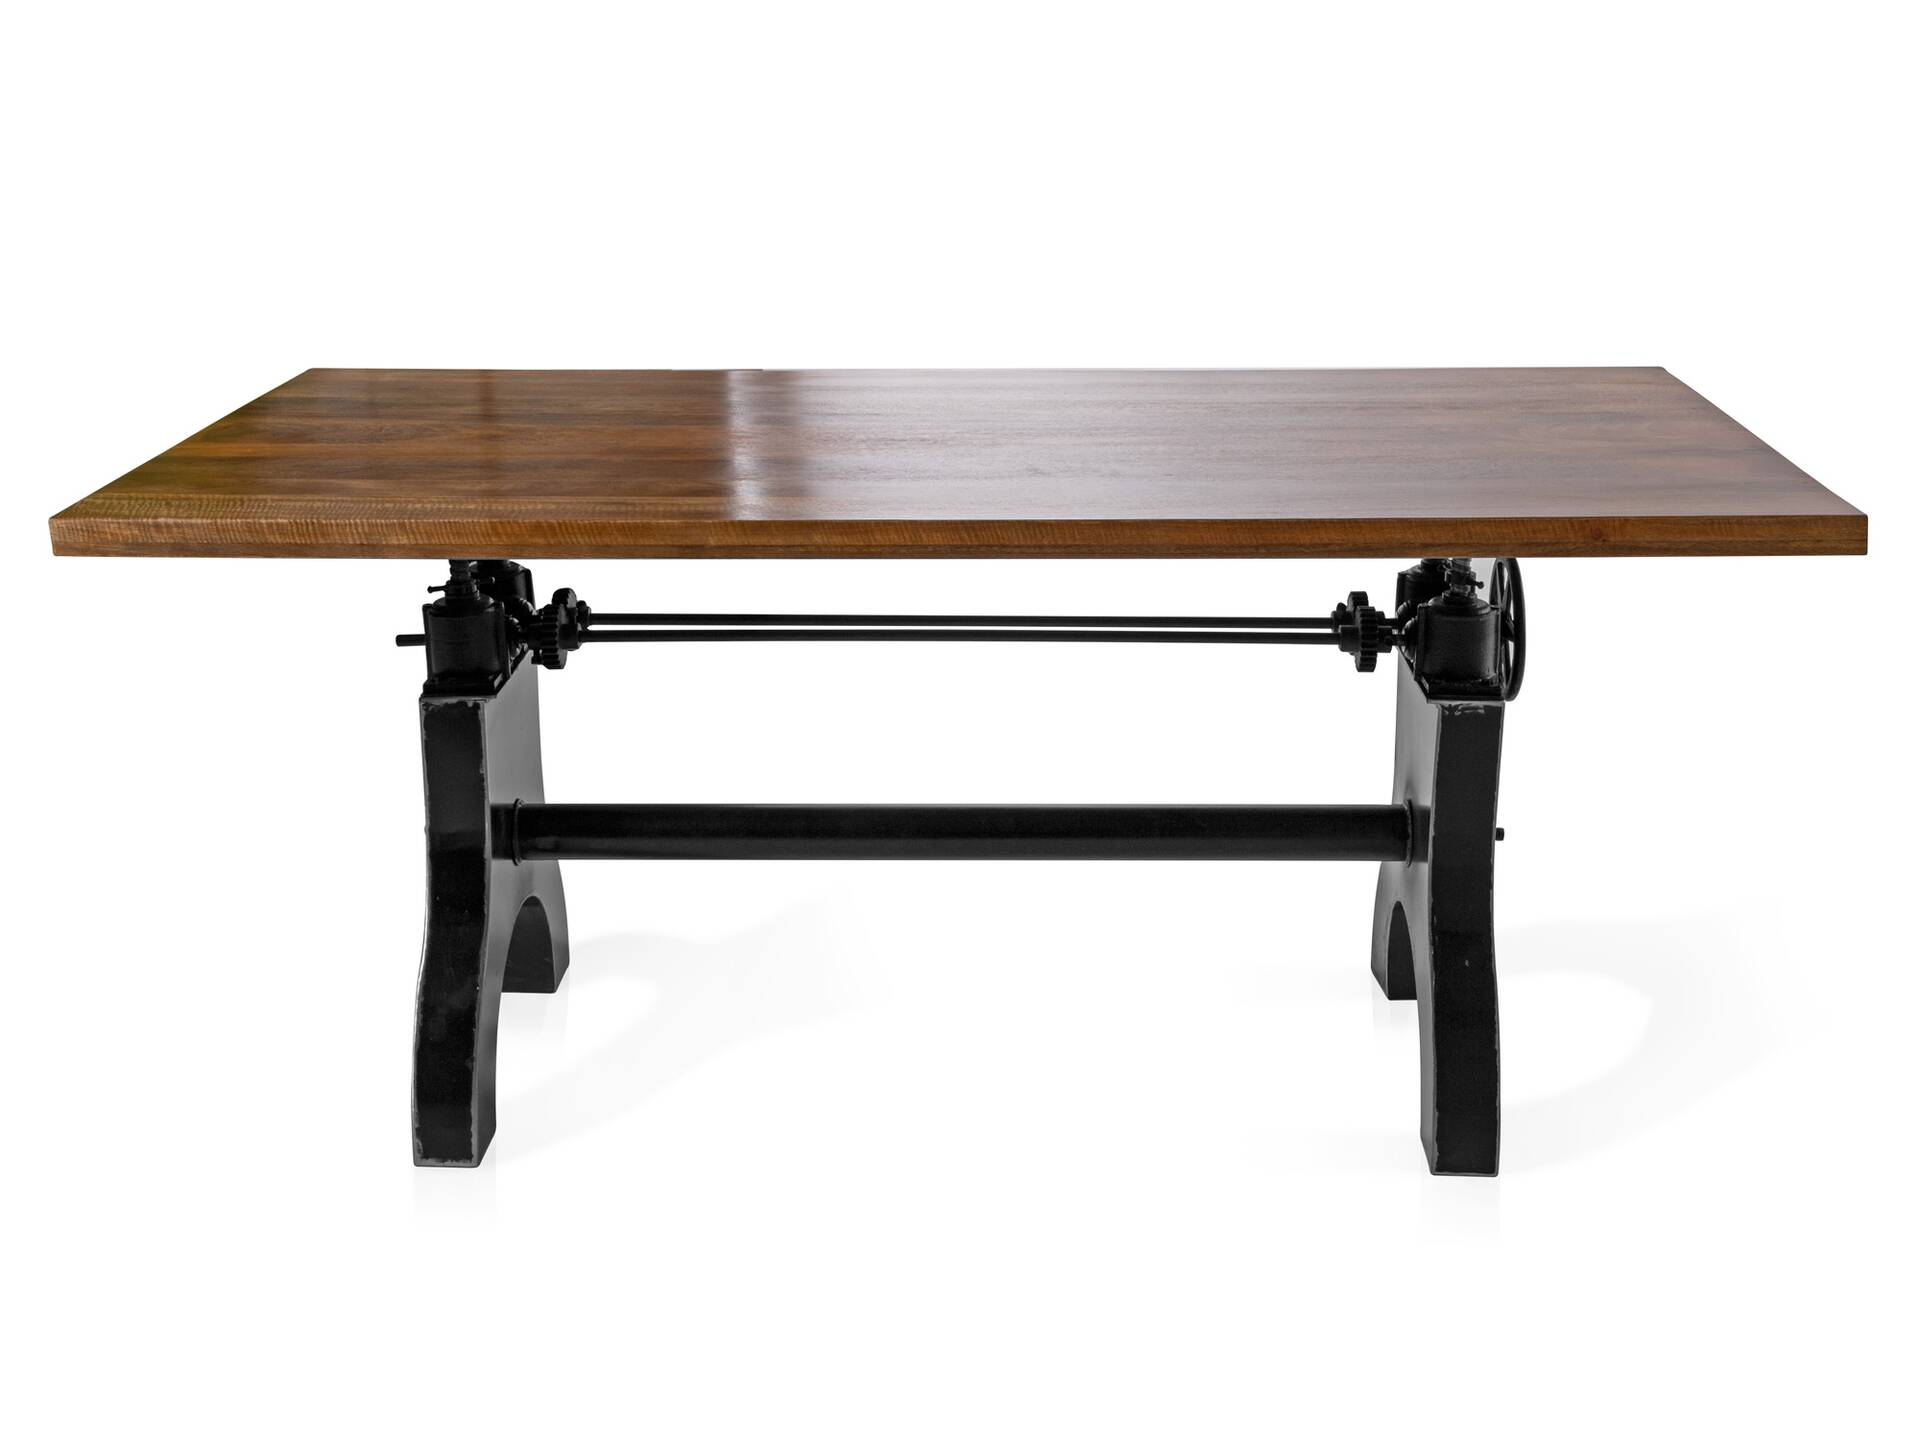 WIEN Tischgestell, Material Gusseisen 110 cm